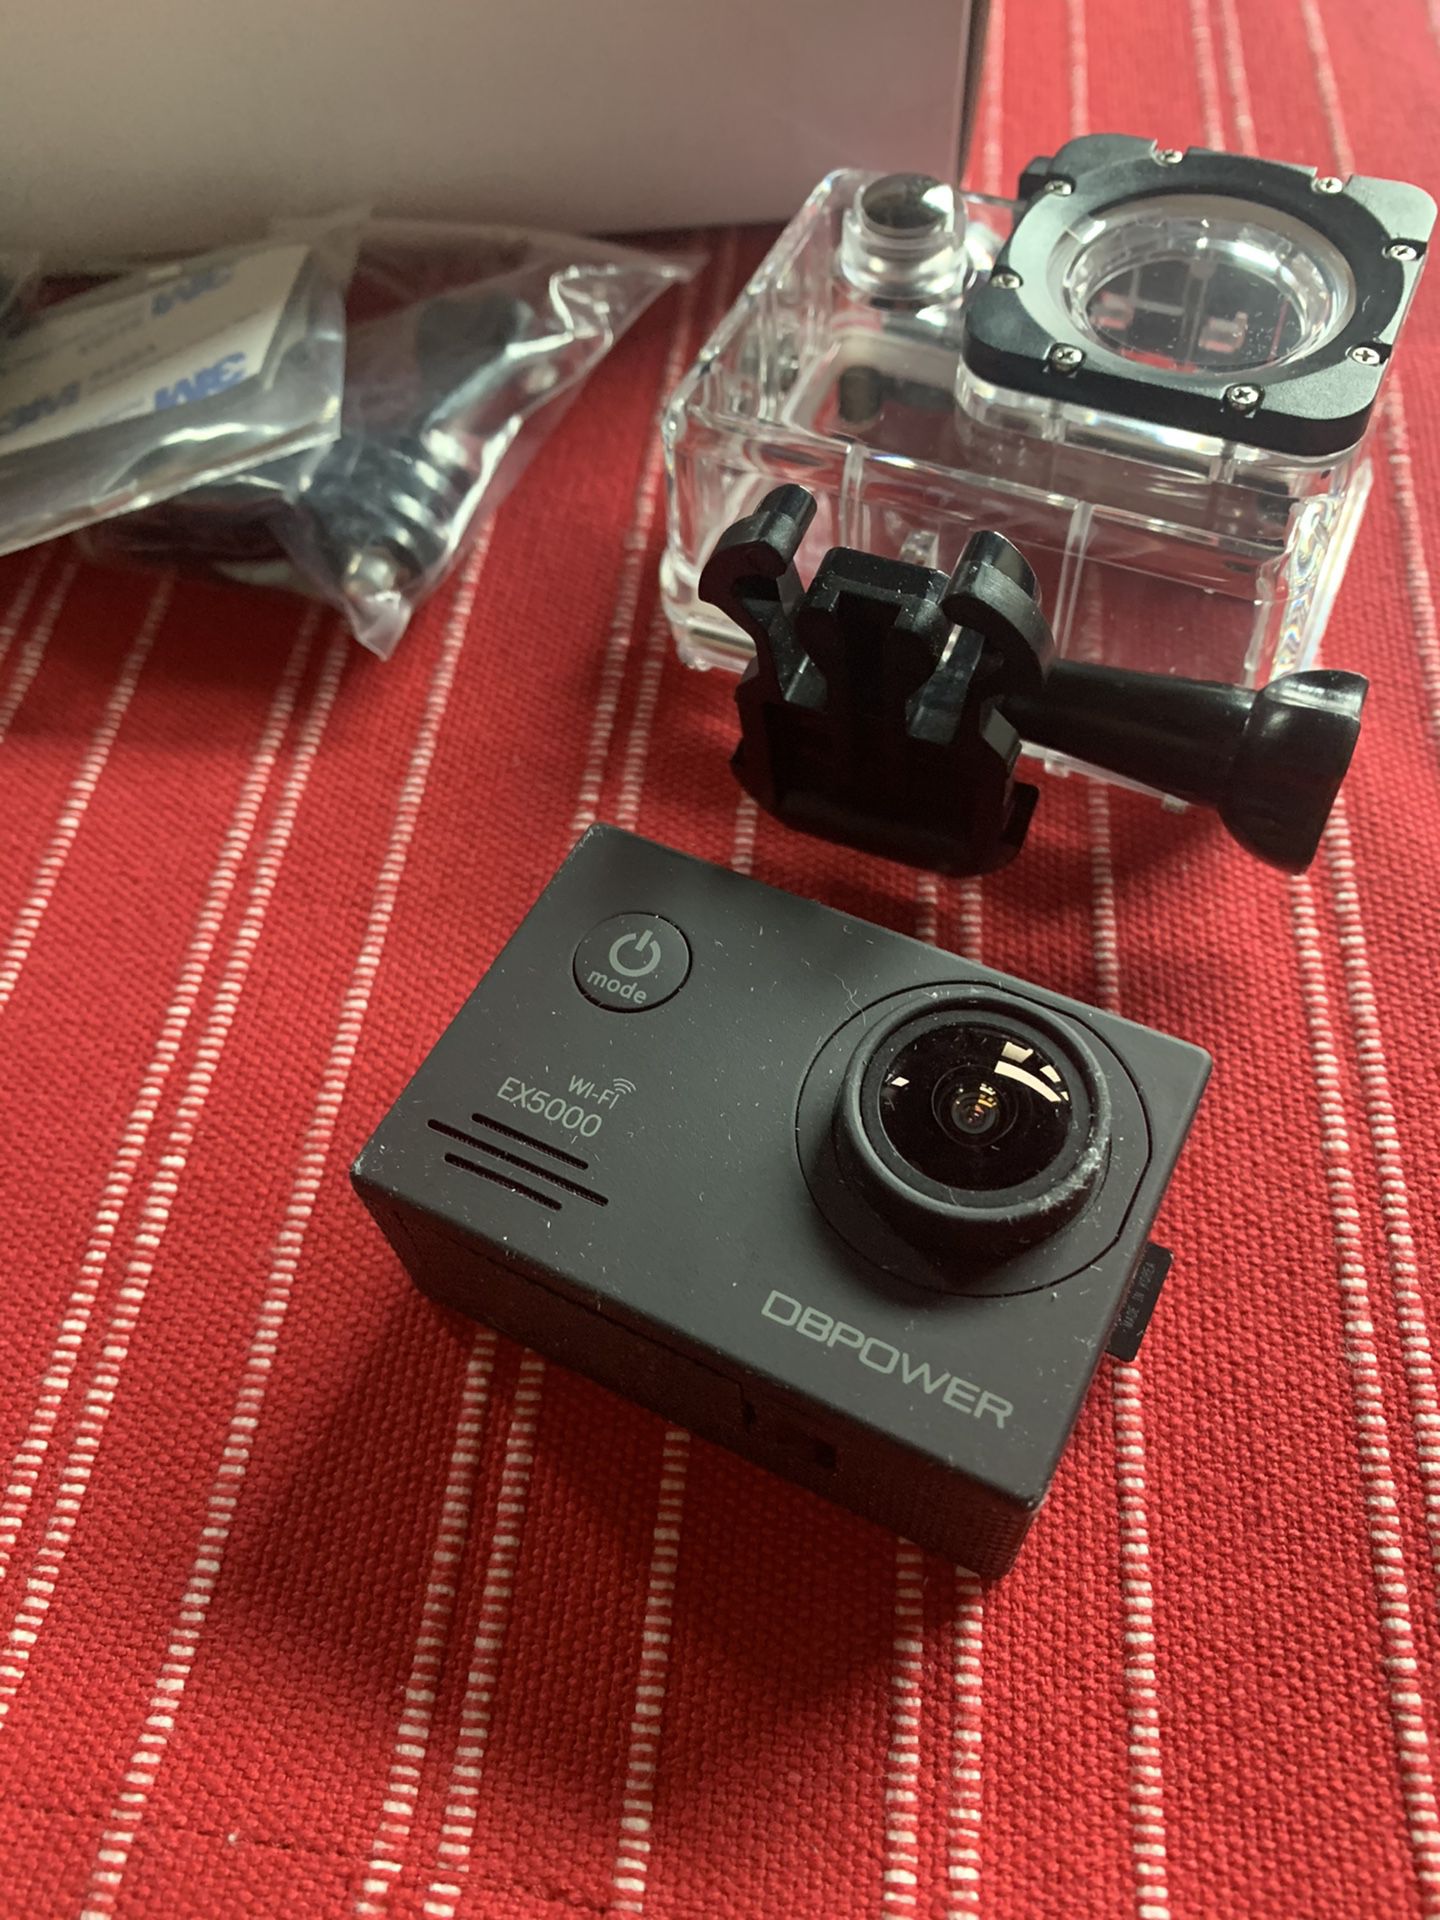 DBPOWER Camera similar to GoPro Extreme Camera